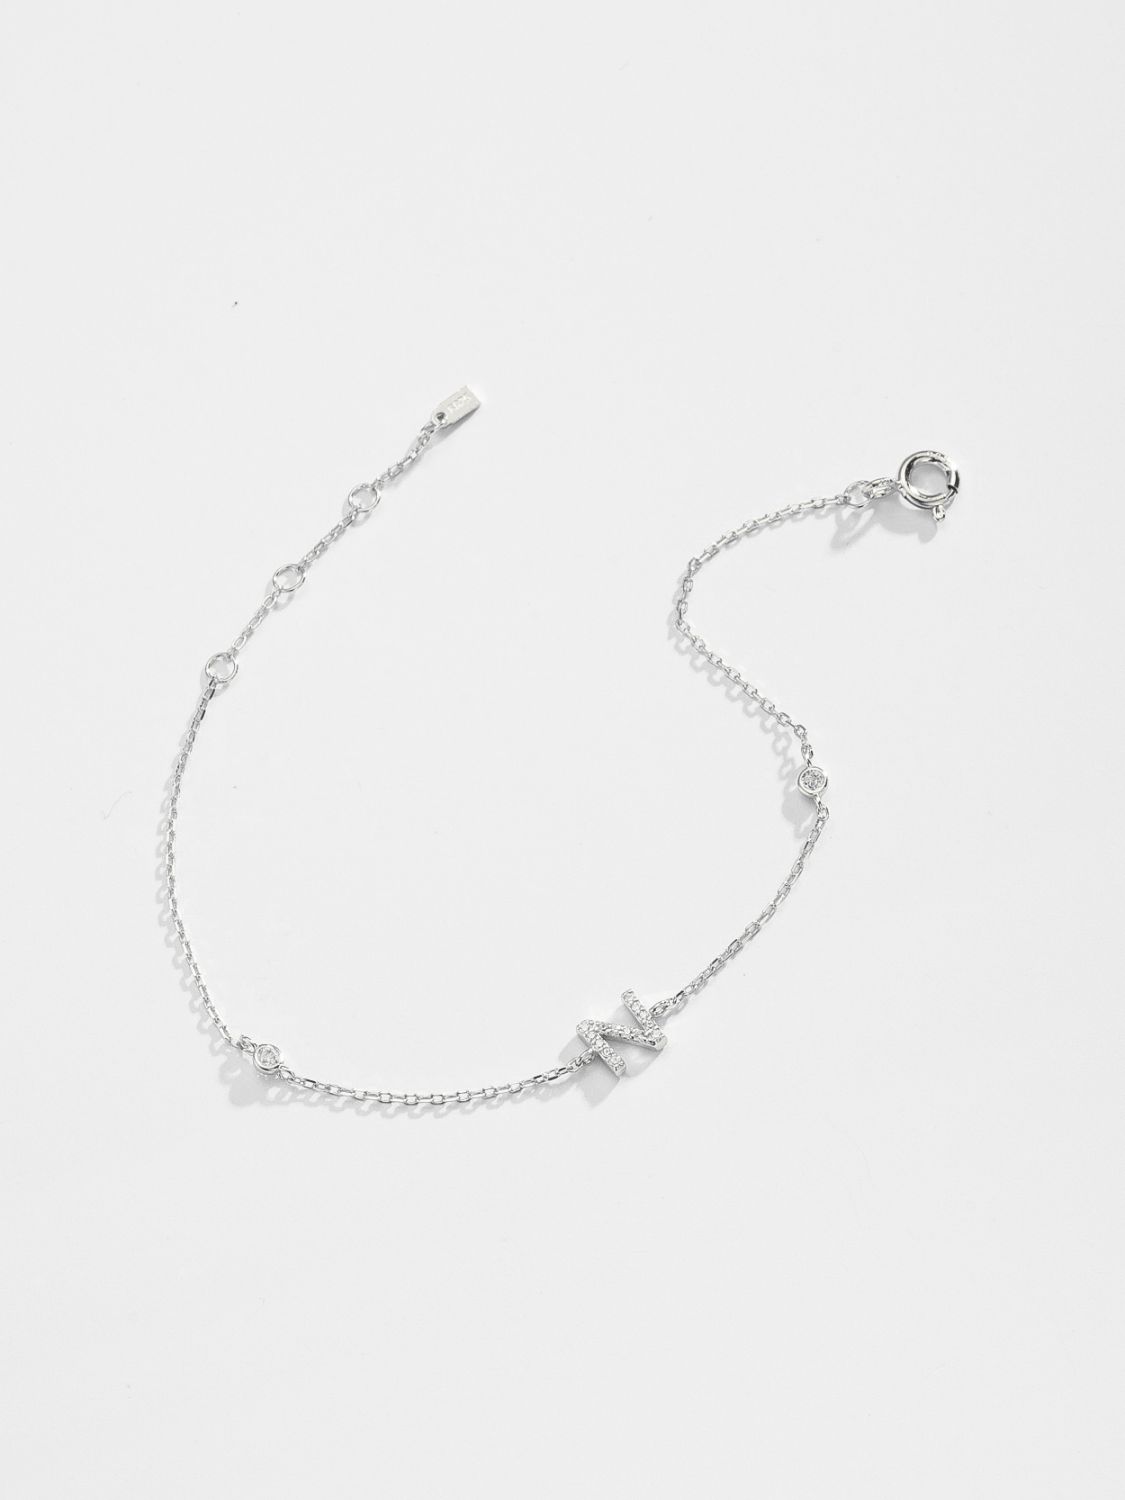 L To P Zircon 925 Sterling Silver Bracelet - Women’s Jewelry - Bracelets - 17 - 2024